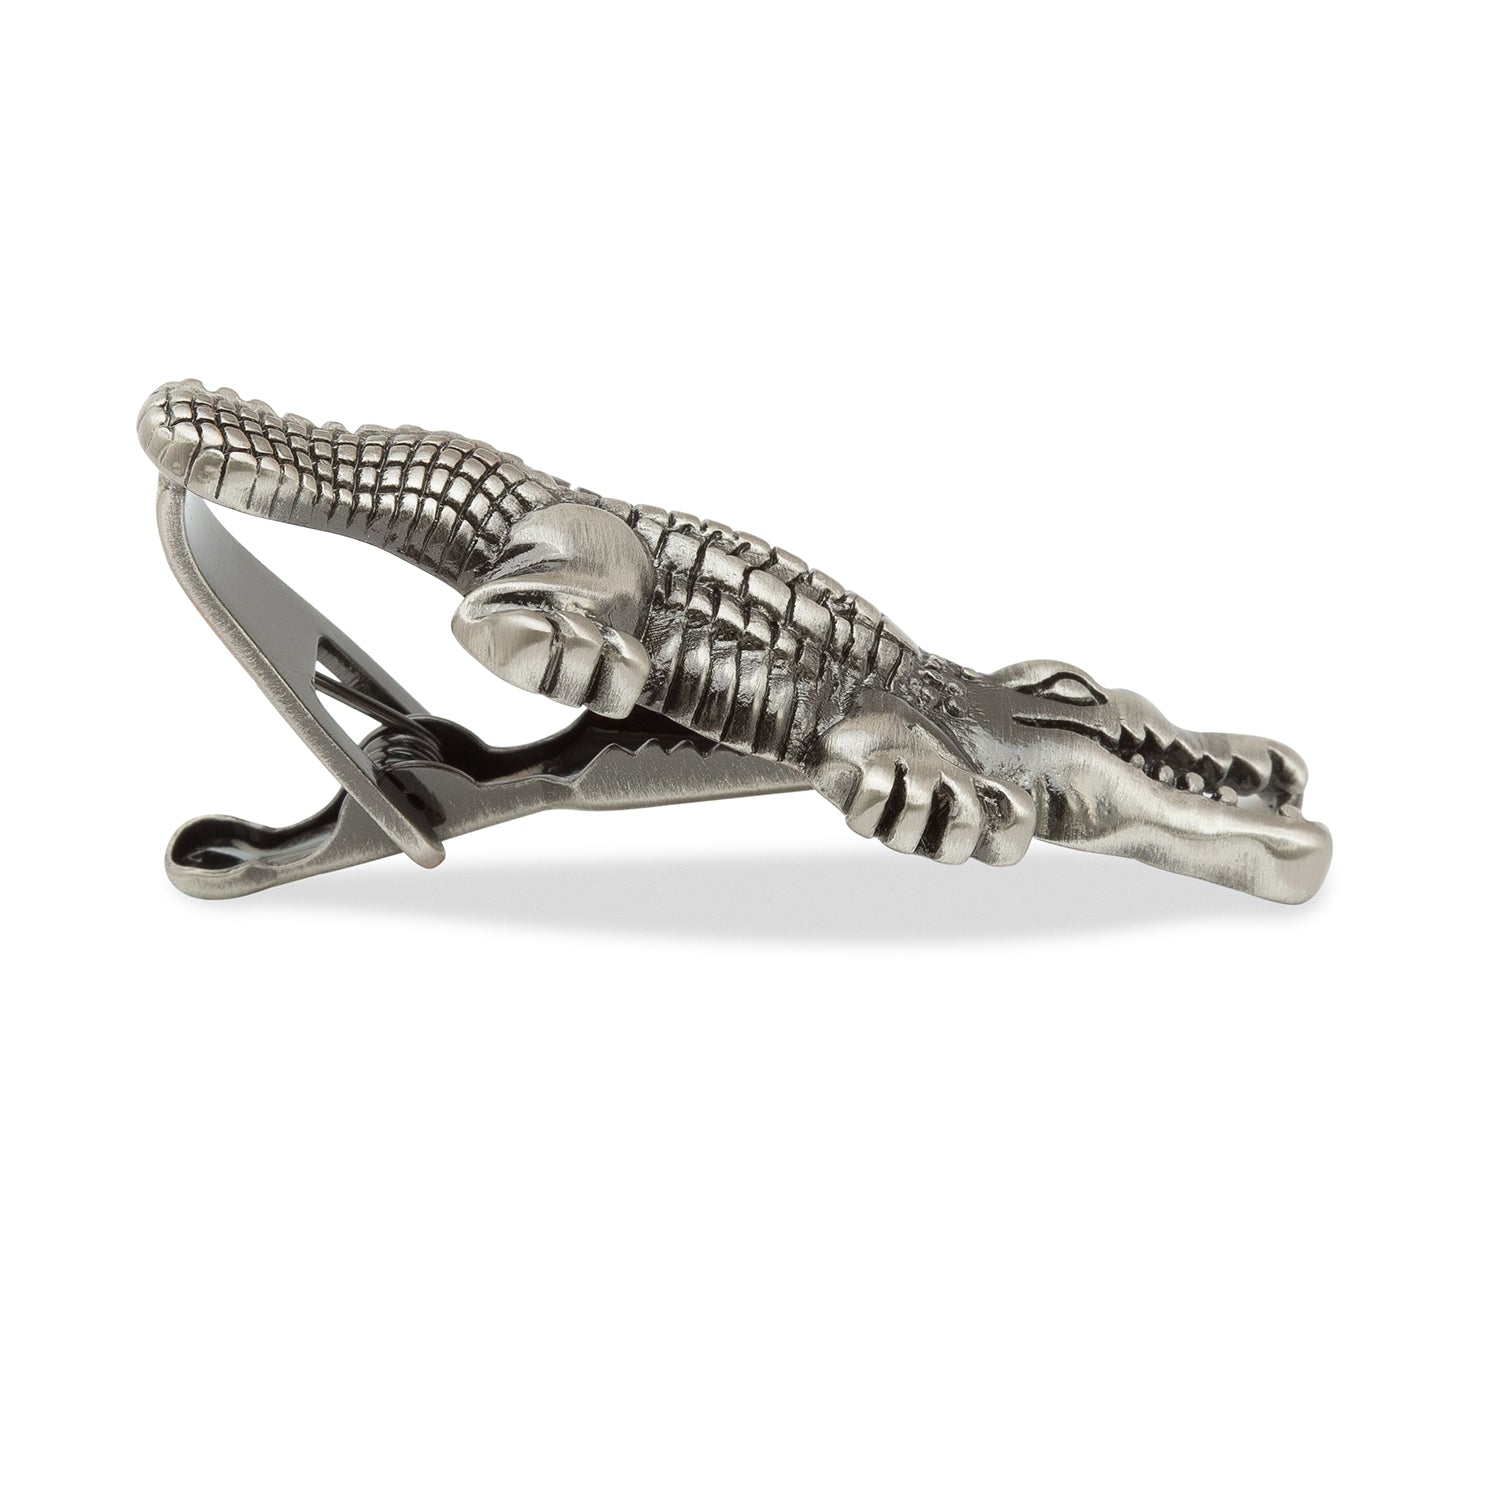 Antique Silver Irwin Crocodile Tie Bars